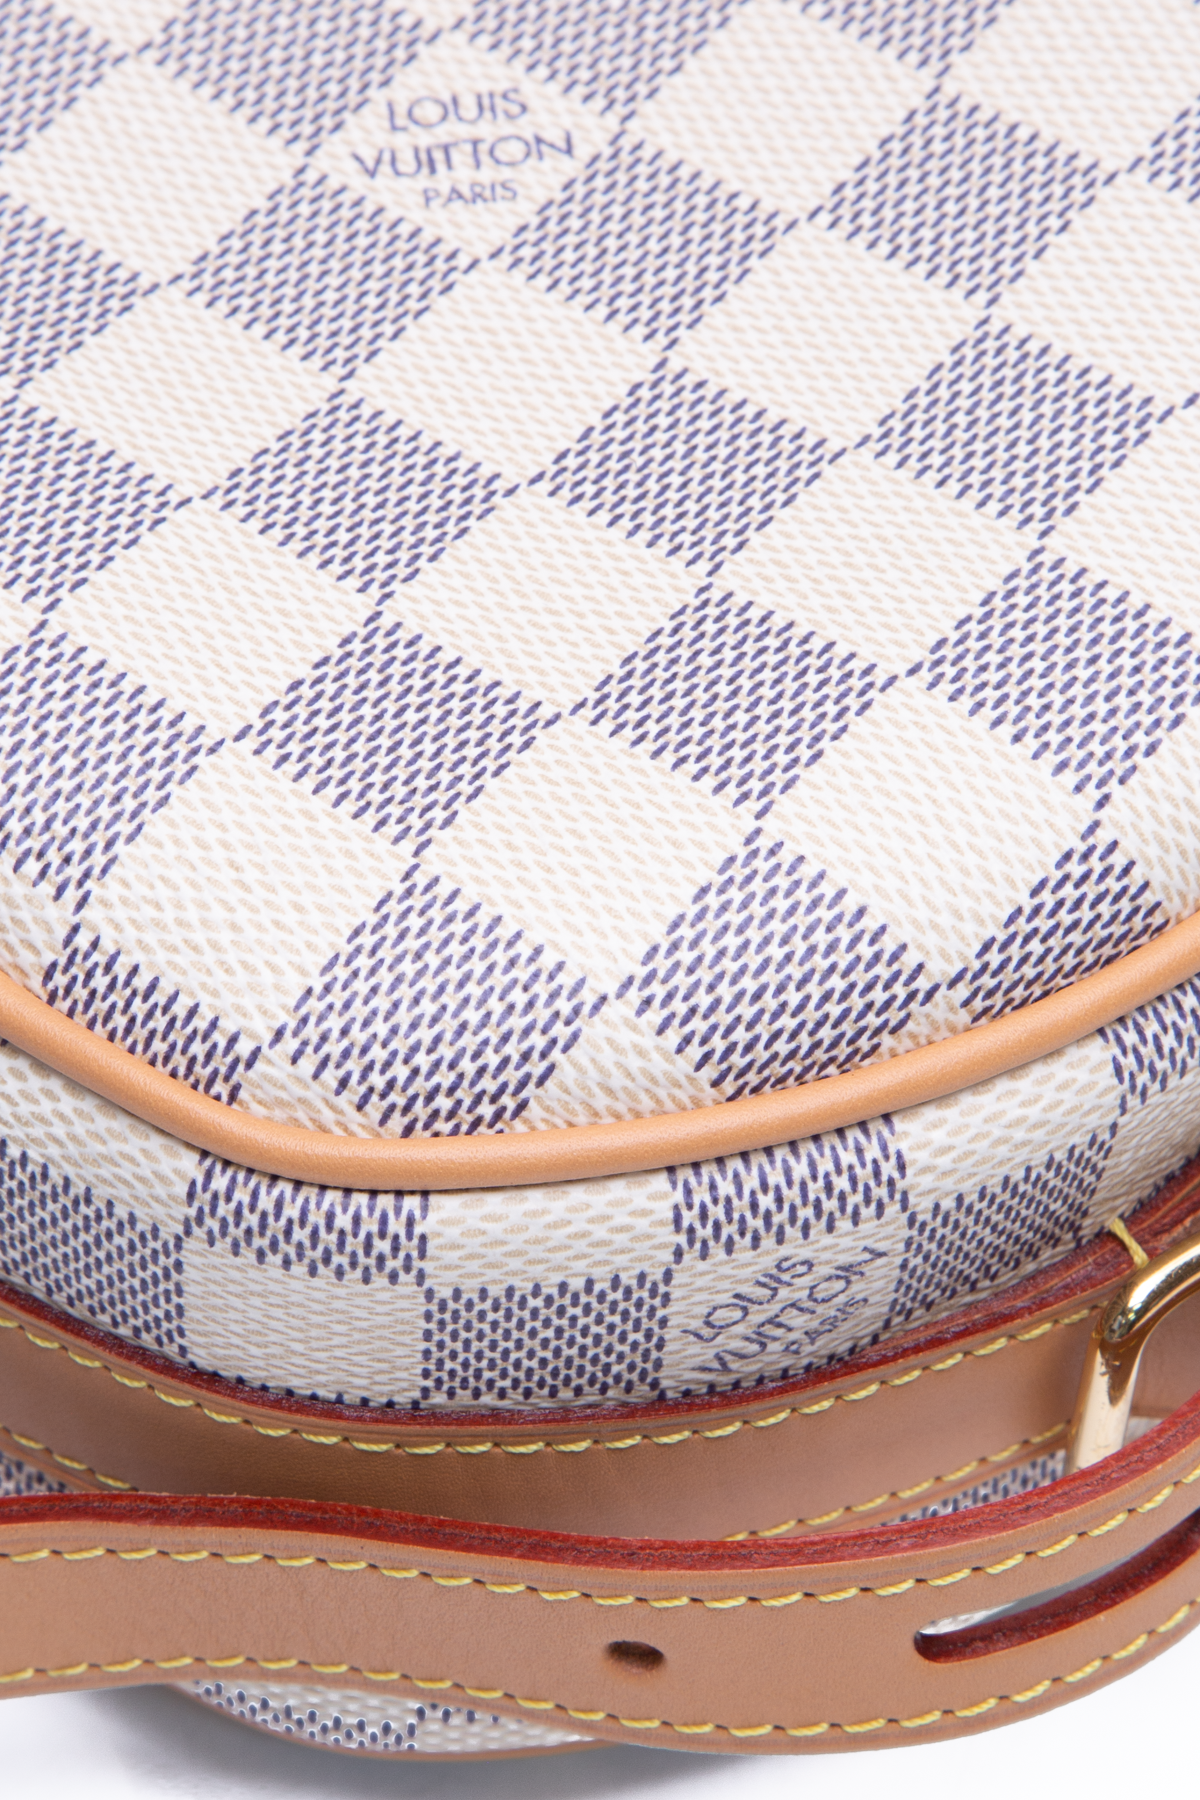 Louis Vuitton Damier Azur Boite Chapeau Souple PM Shoulder Bag, Louis  Vuitton Handbags